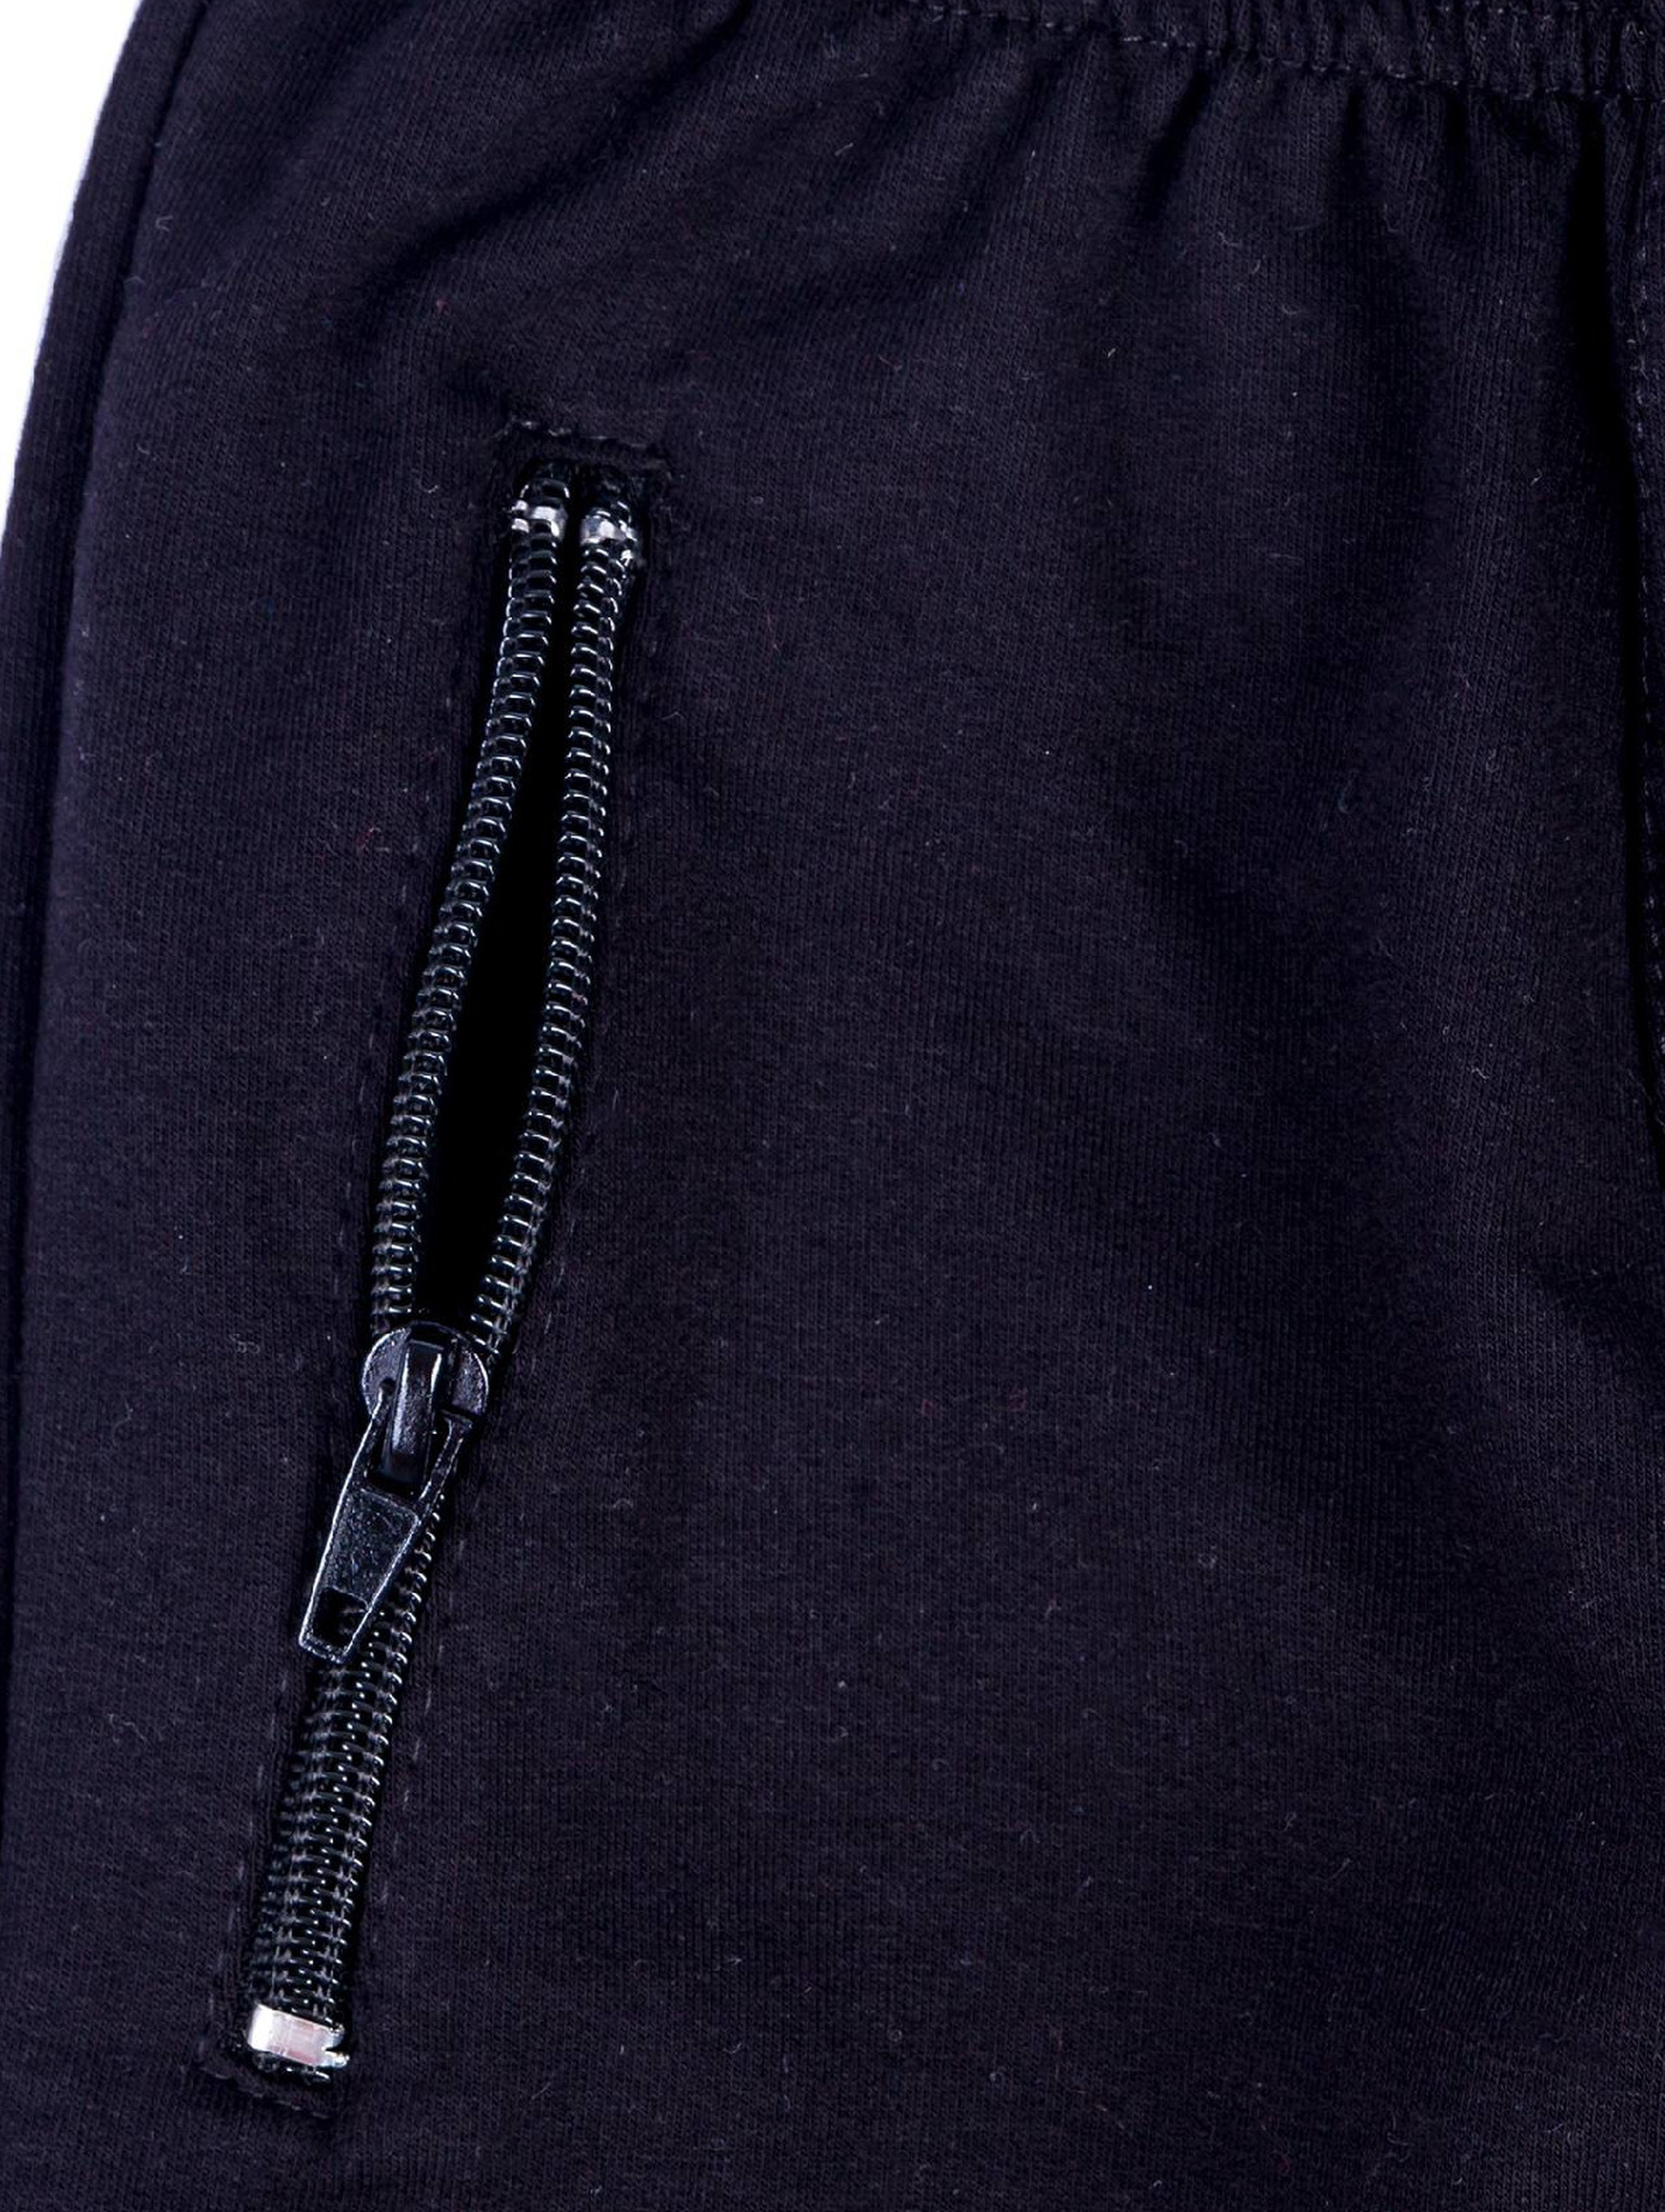 Spodnie dresowe chłopięce czarne Tup Tup z paskami